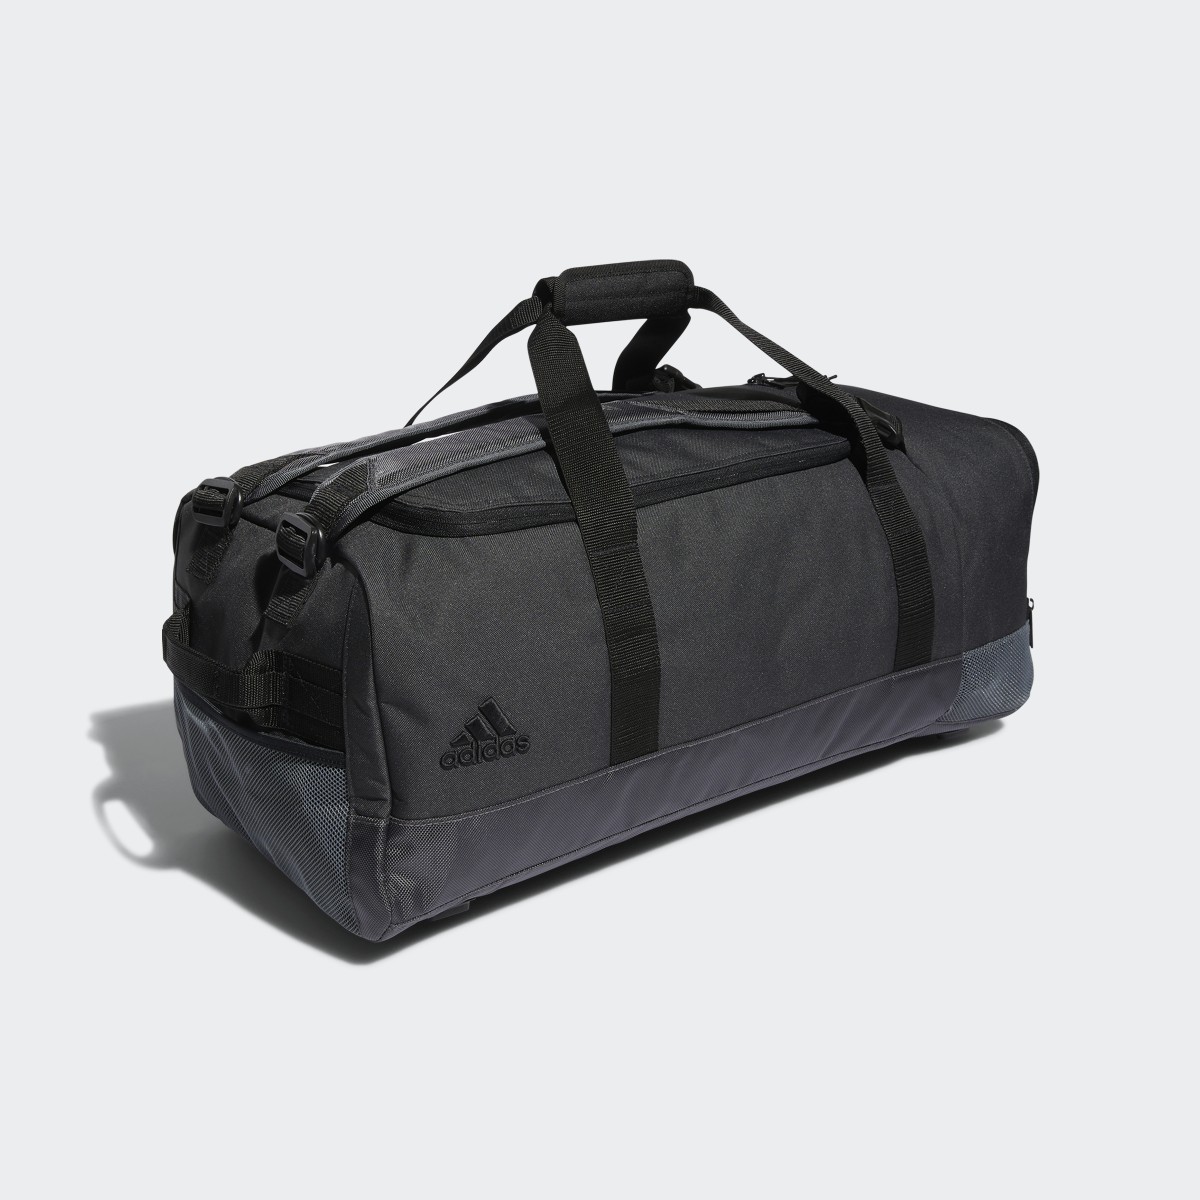 Adidas Golf Duffel Bag. 4